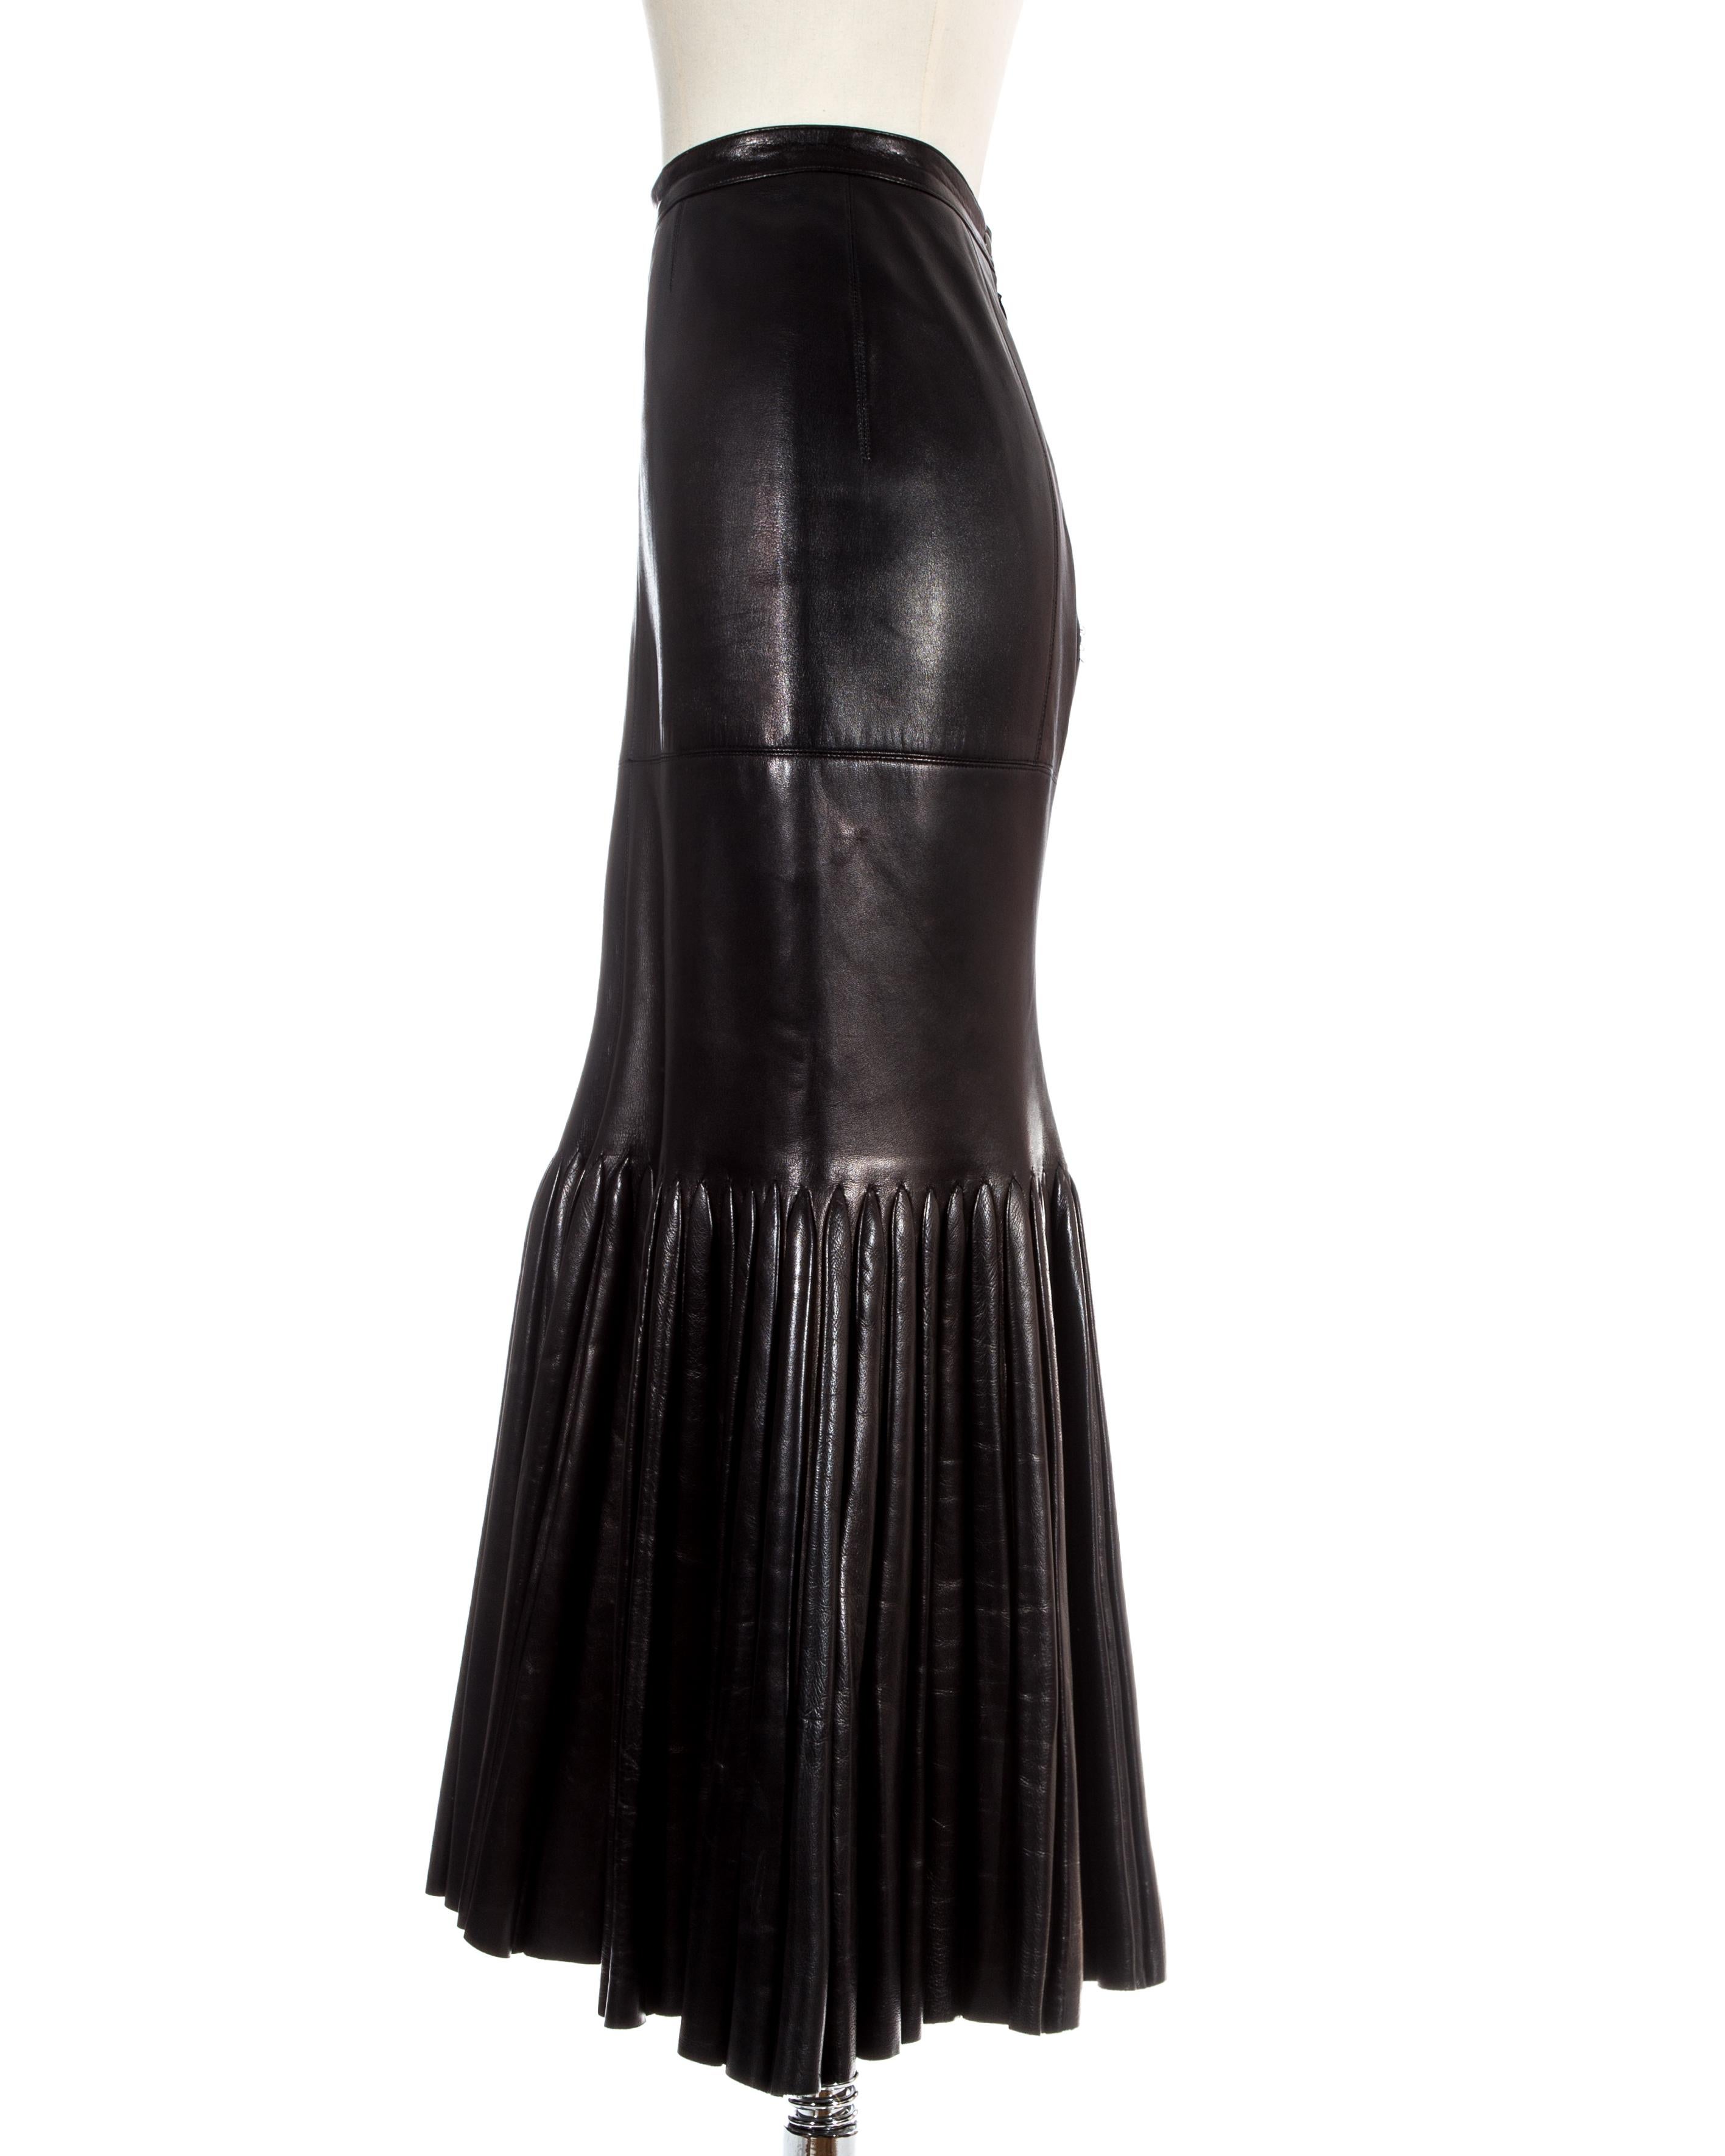 Black Azzedine Alaia black leather skirt with pleated mermaid hem, c. 1999